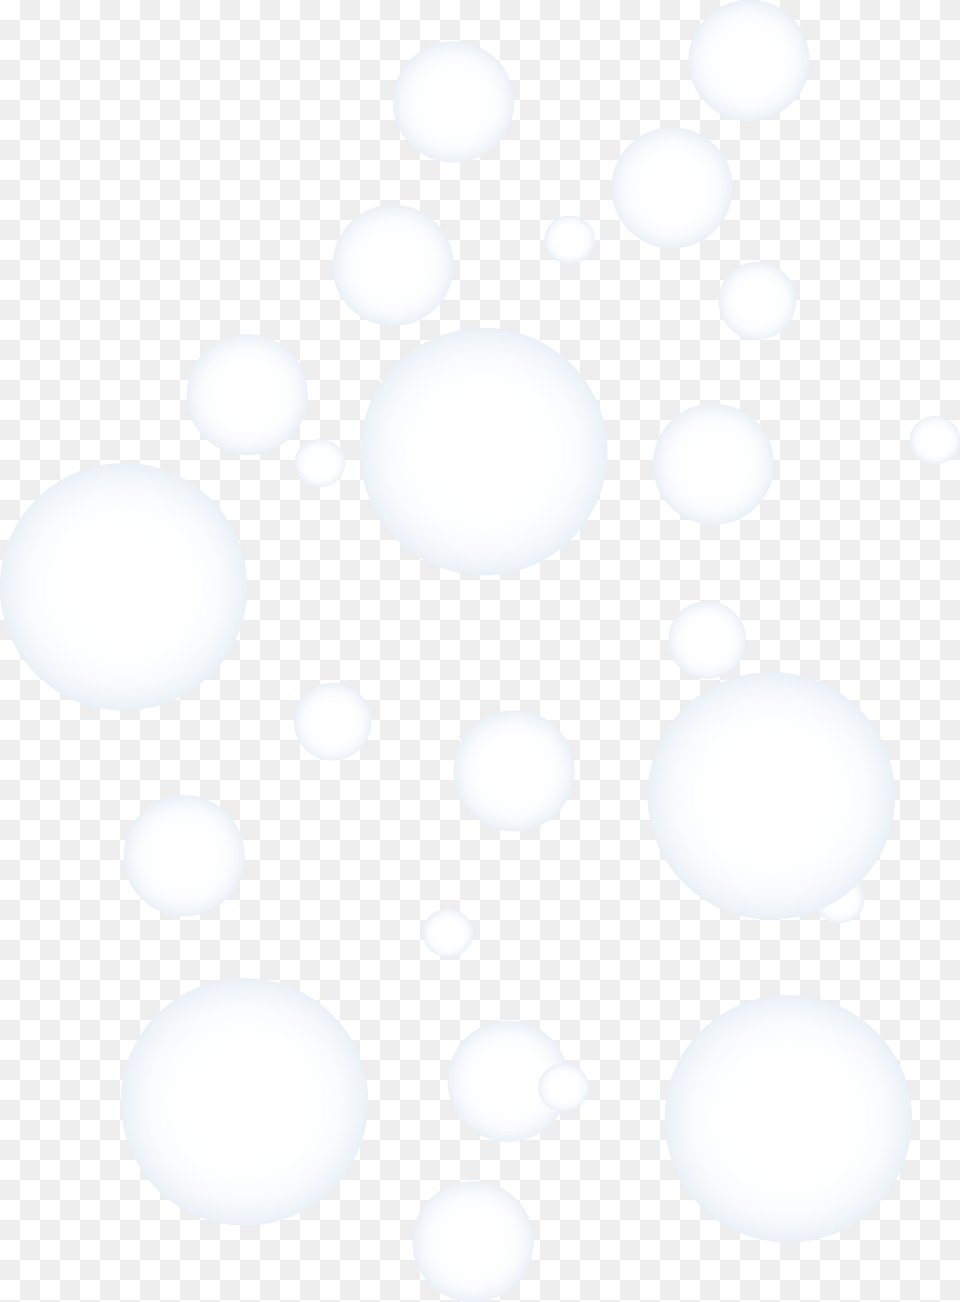 Soap Bubbles Black And White Transparent Soap Bubbles Black And White Bubble Png